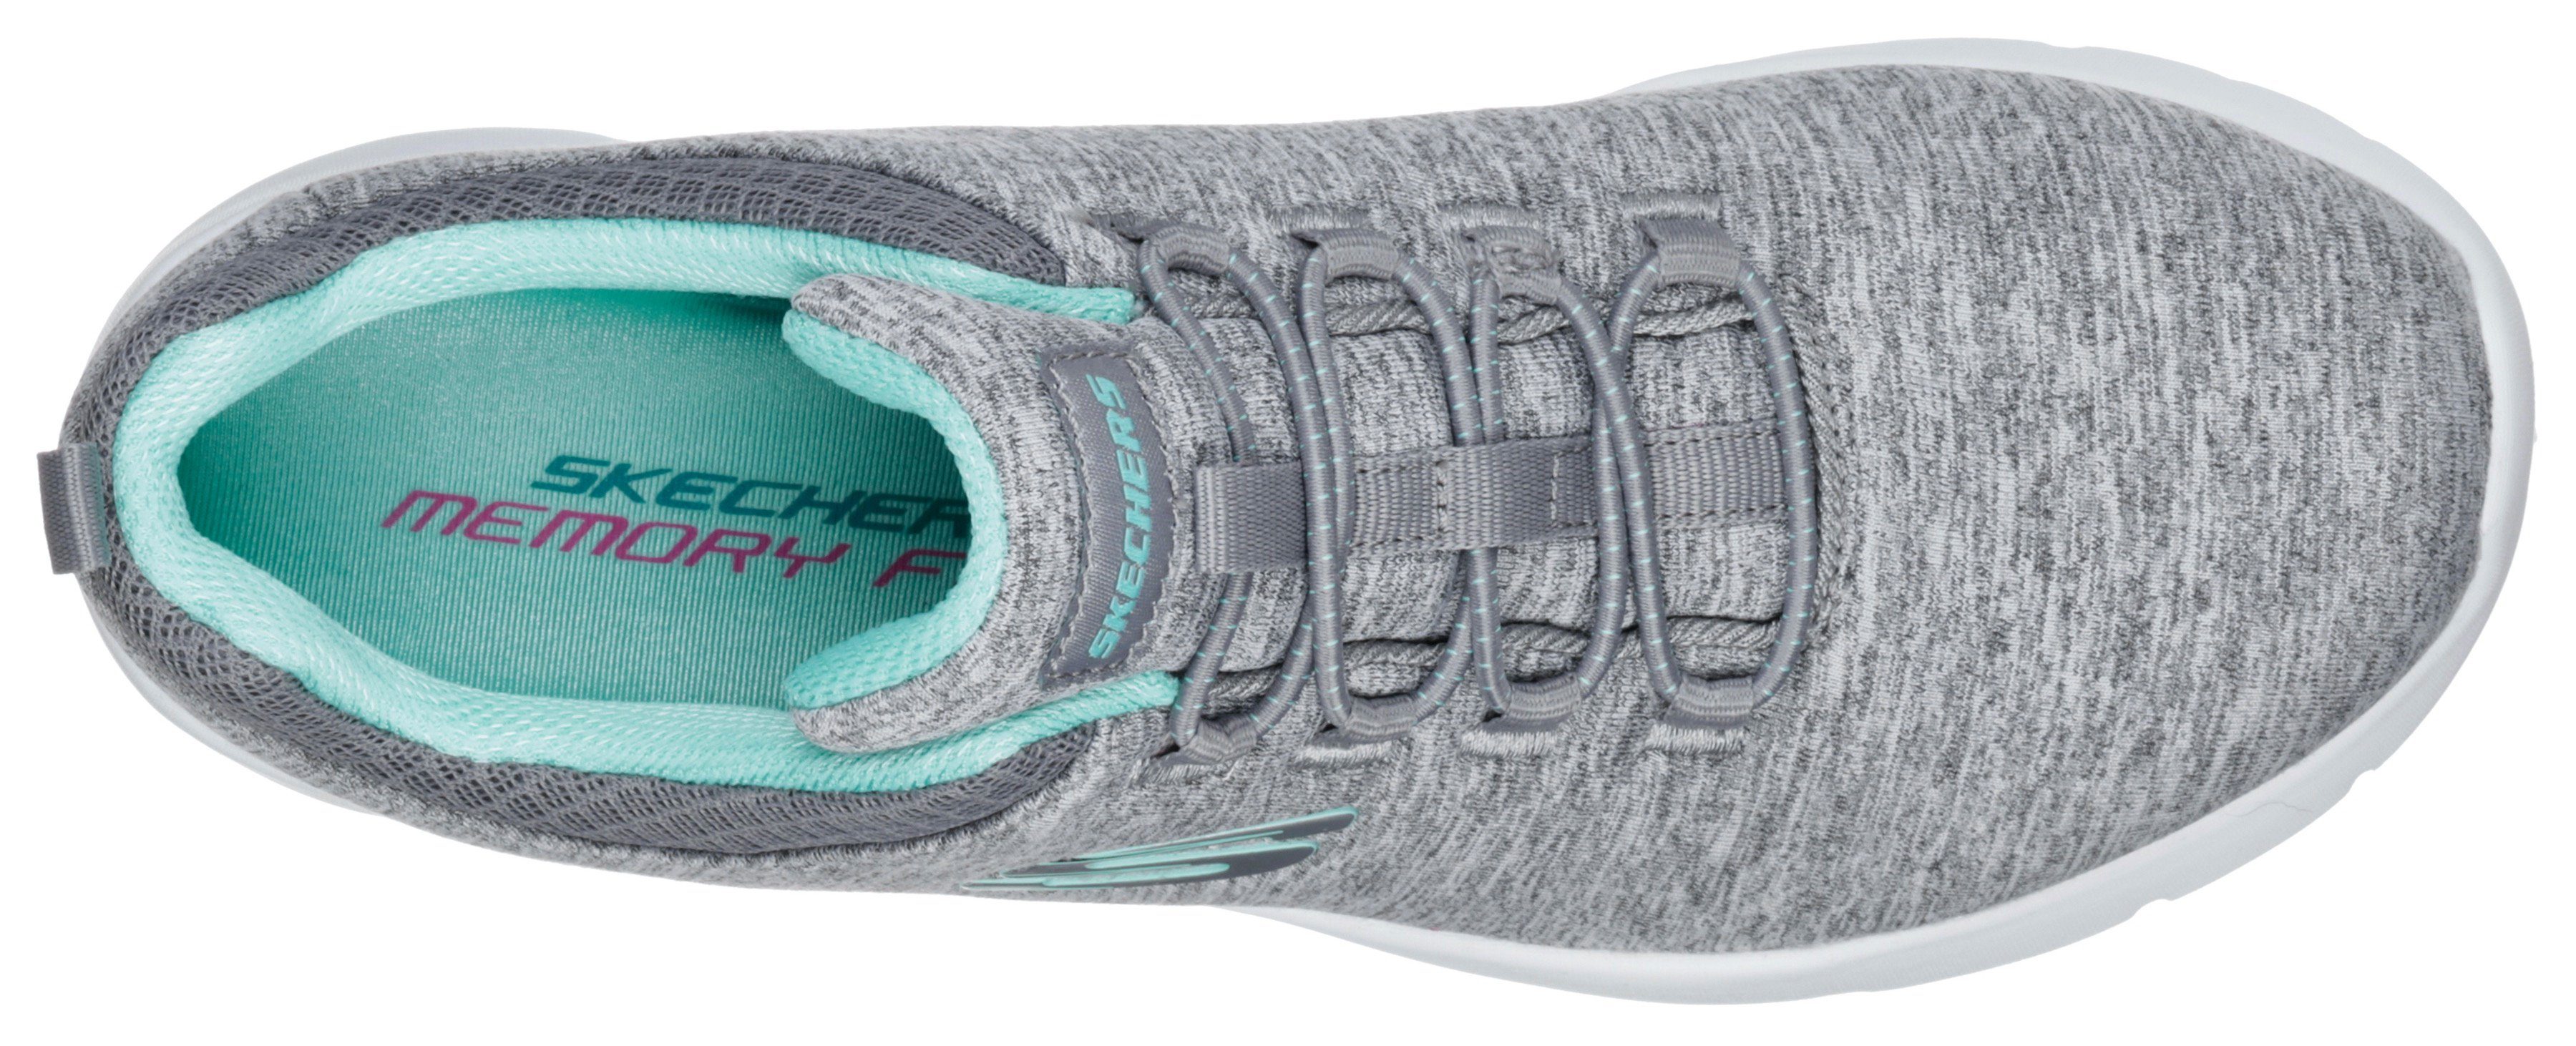 Maschinenwäsche Slip-On Skechers 2.0-IN für DYNAMIGHT geeignet Sneaker grau-mint FLASH A